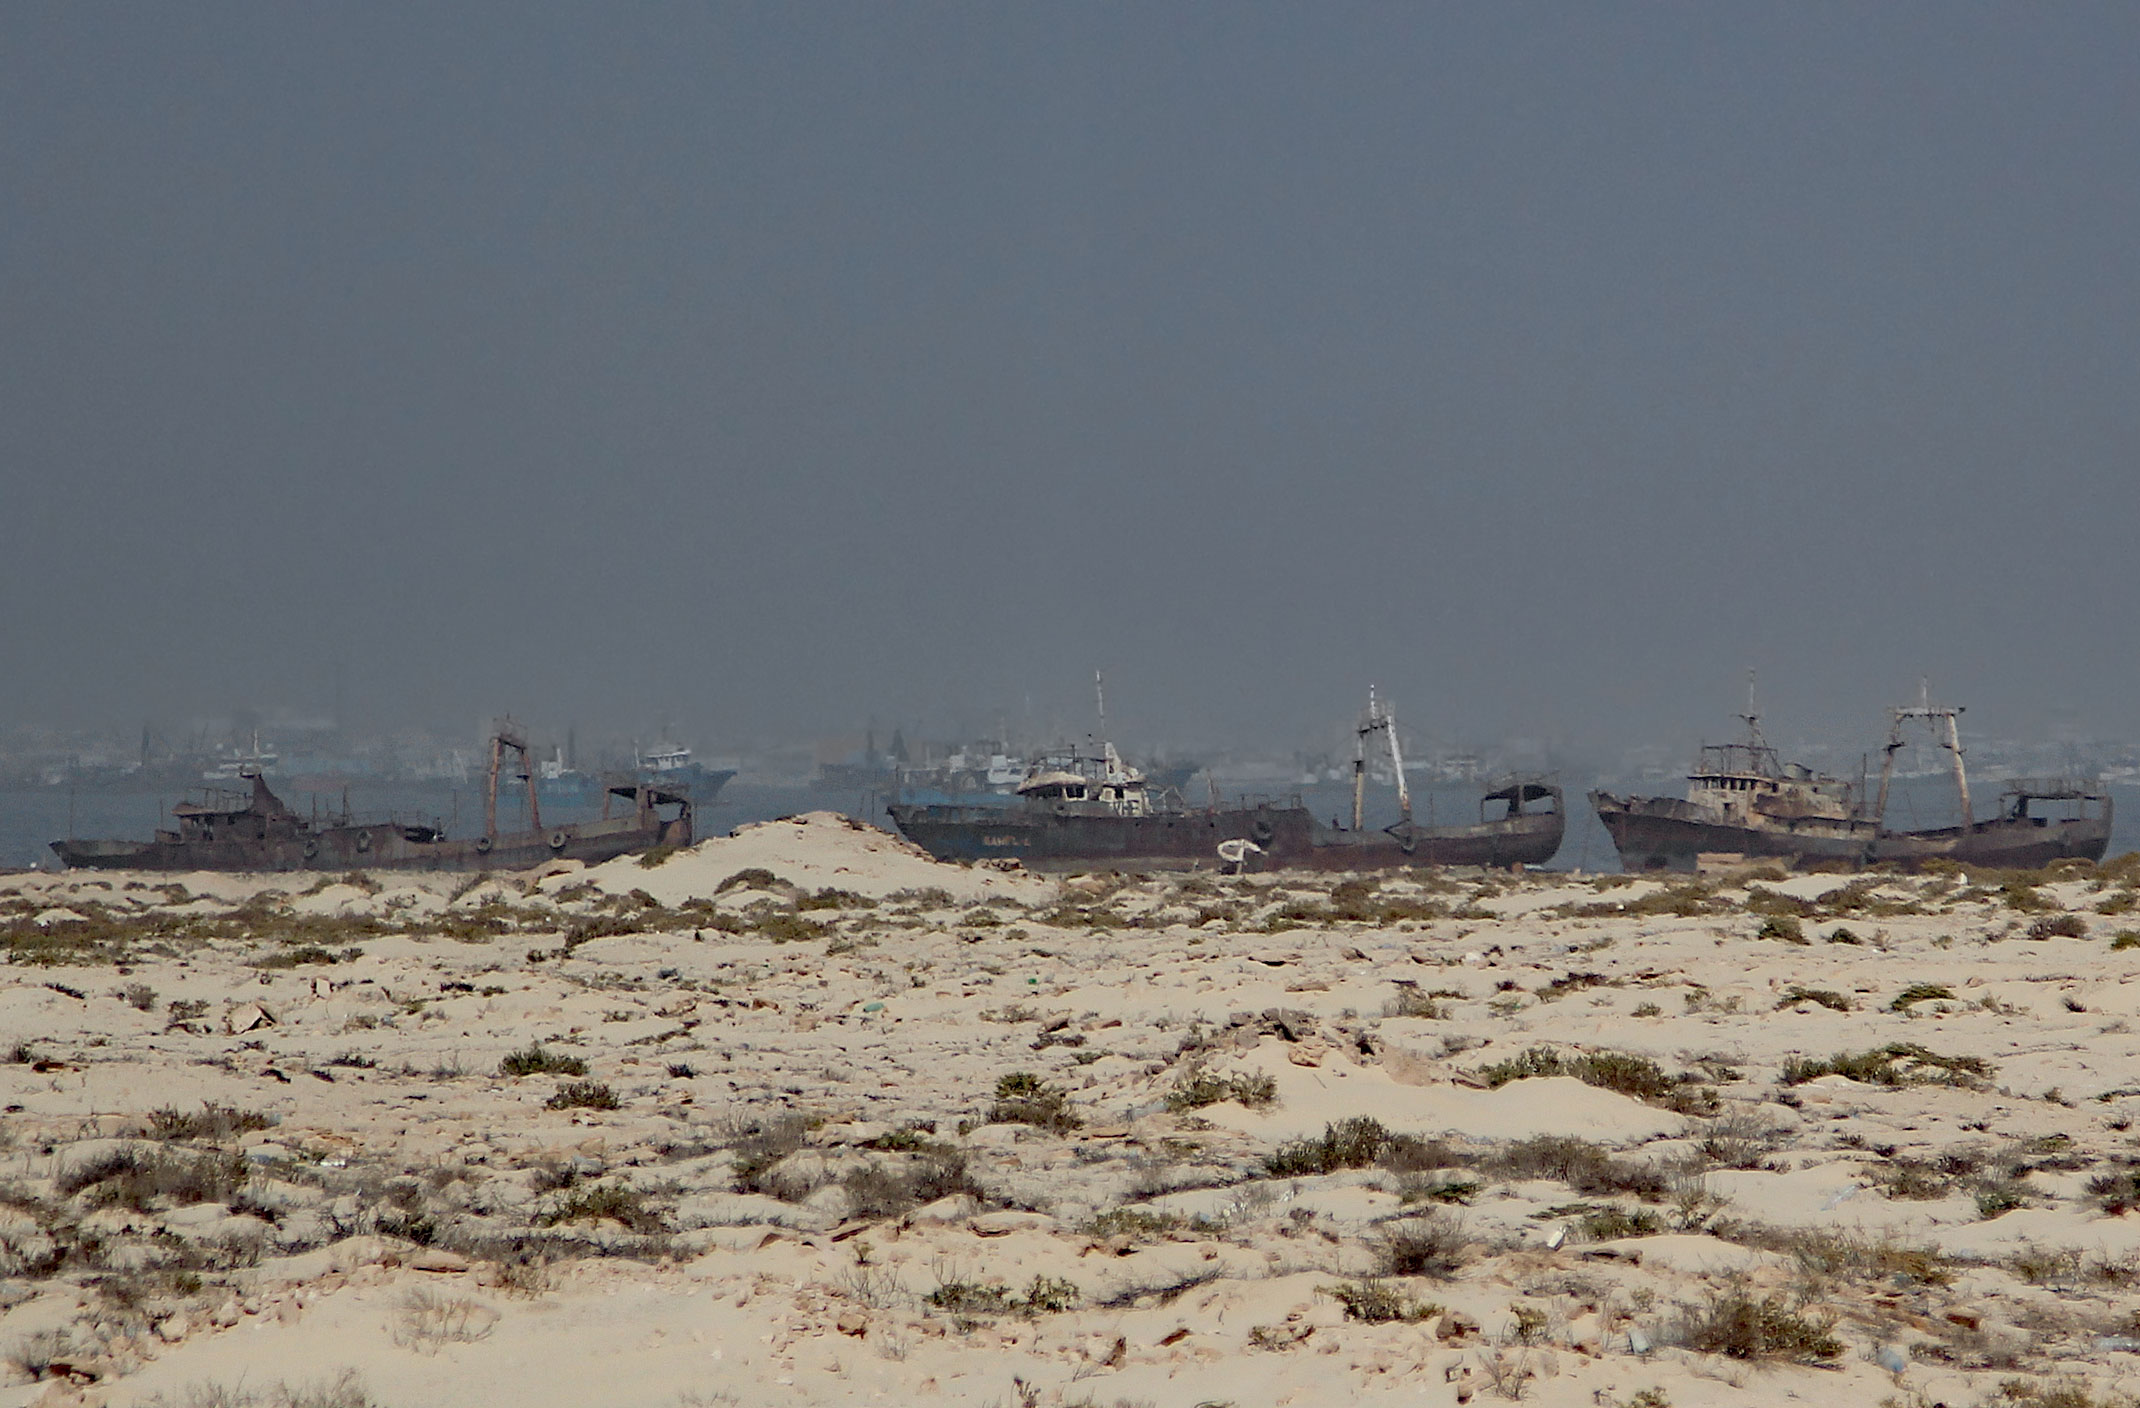 Mauretania.Zatoka wraków zwana cmentarzyskiem statków.